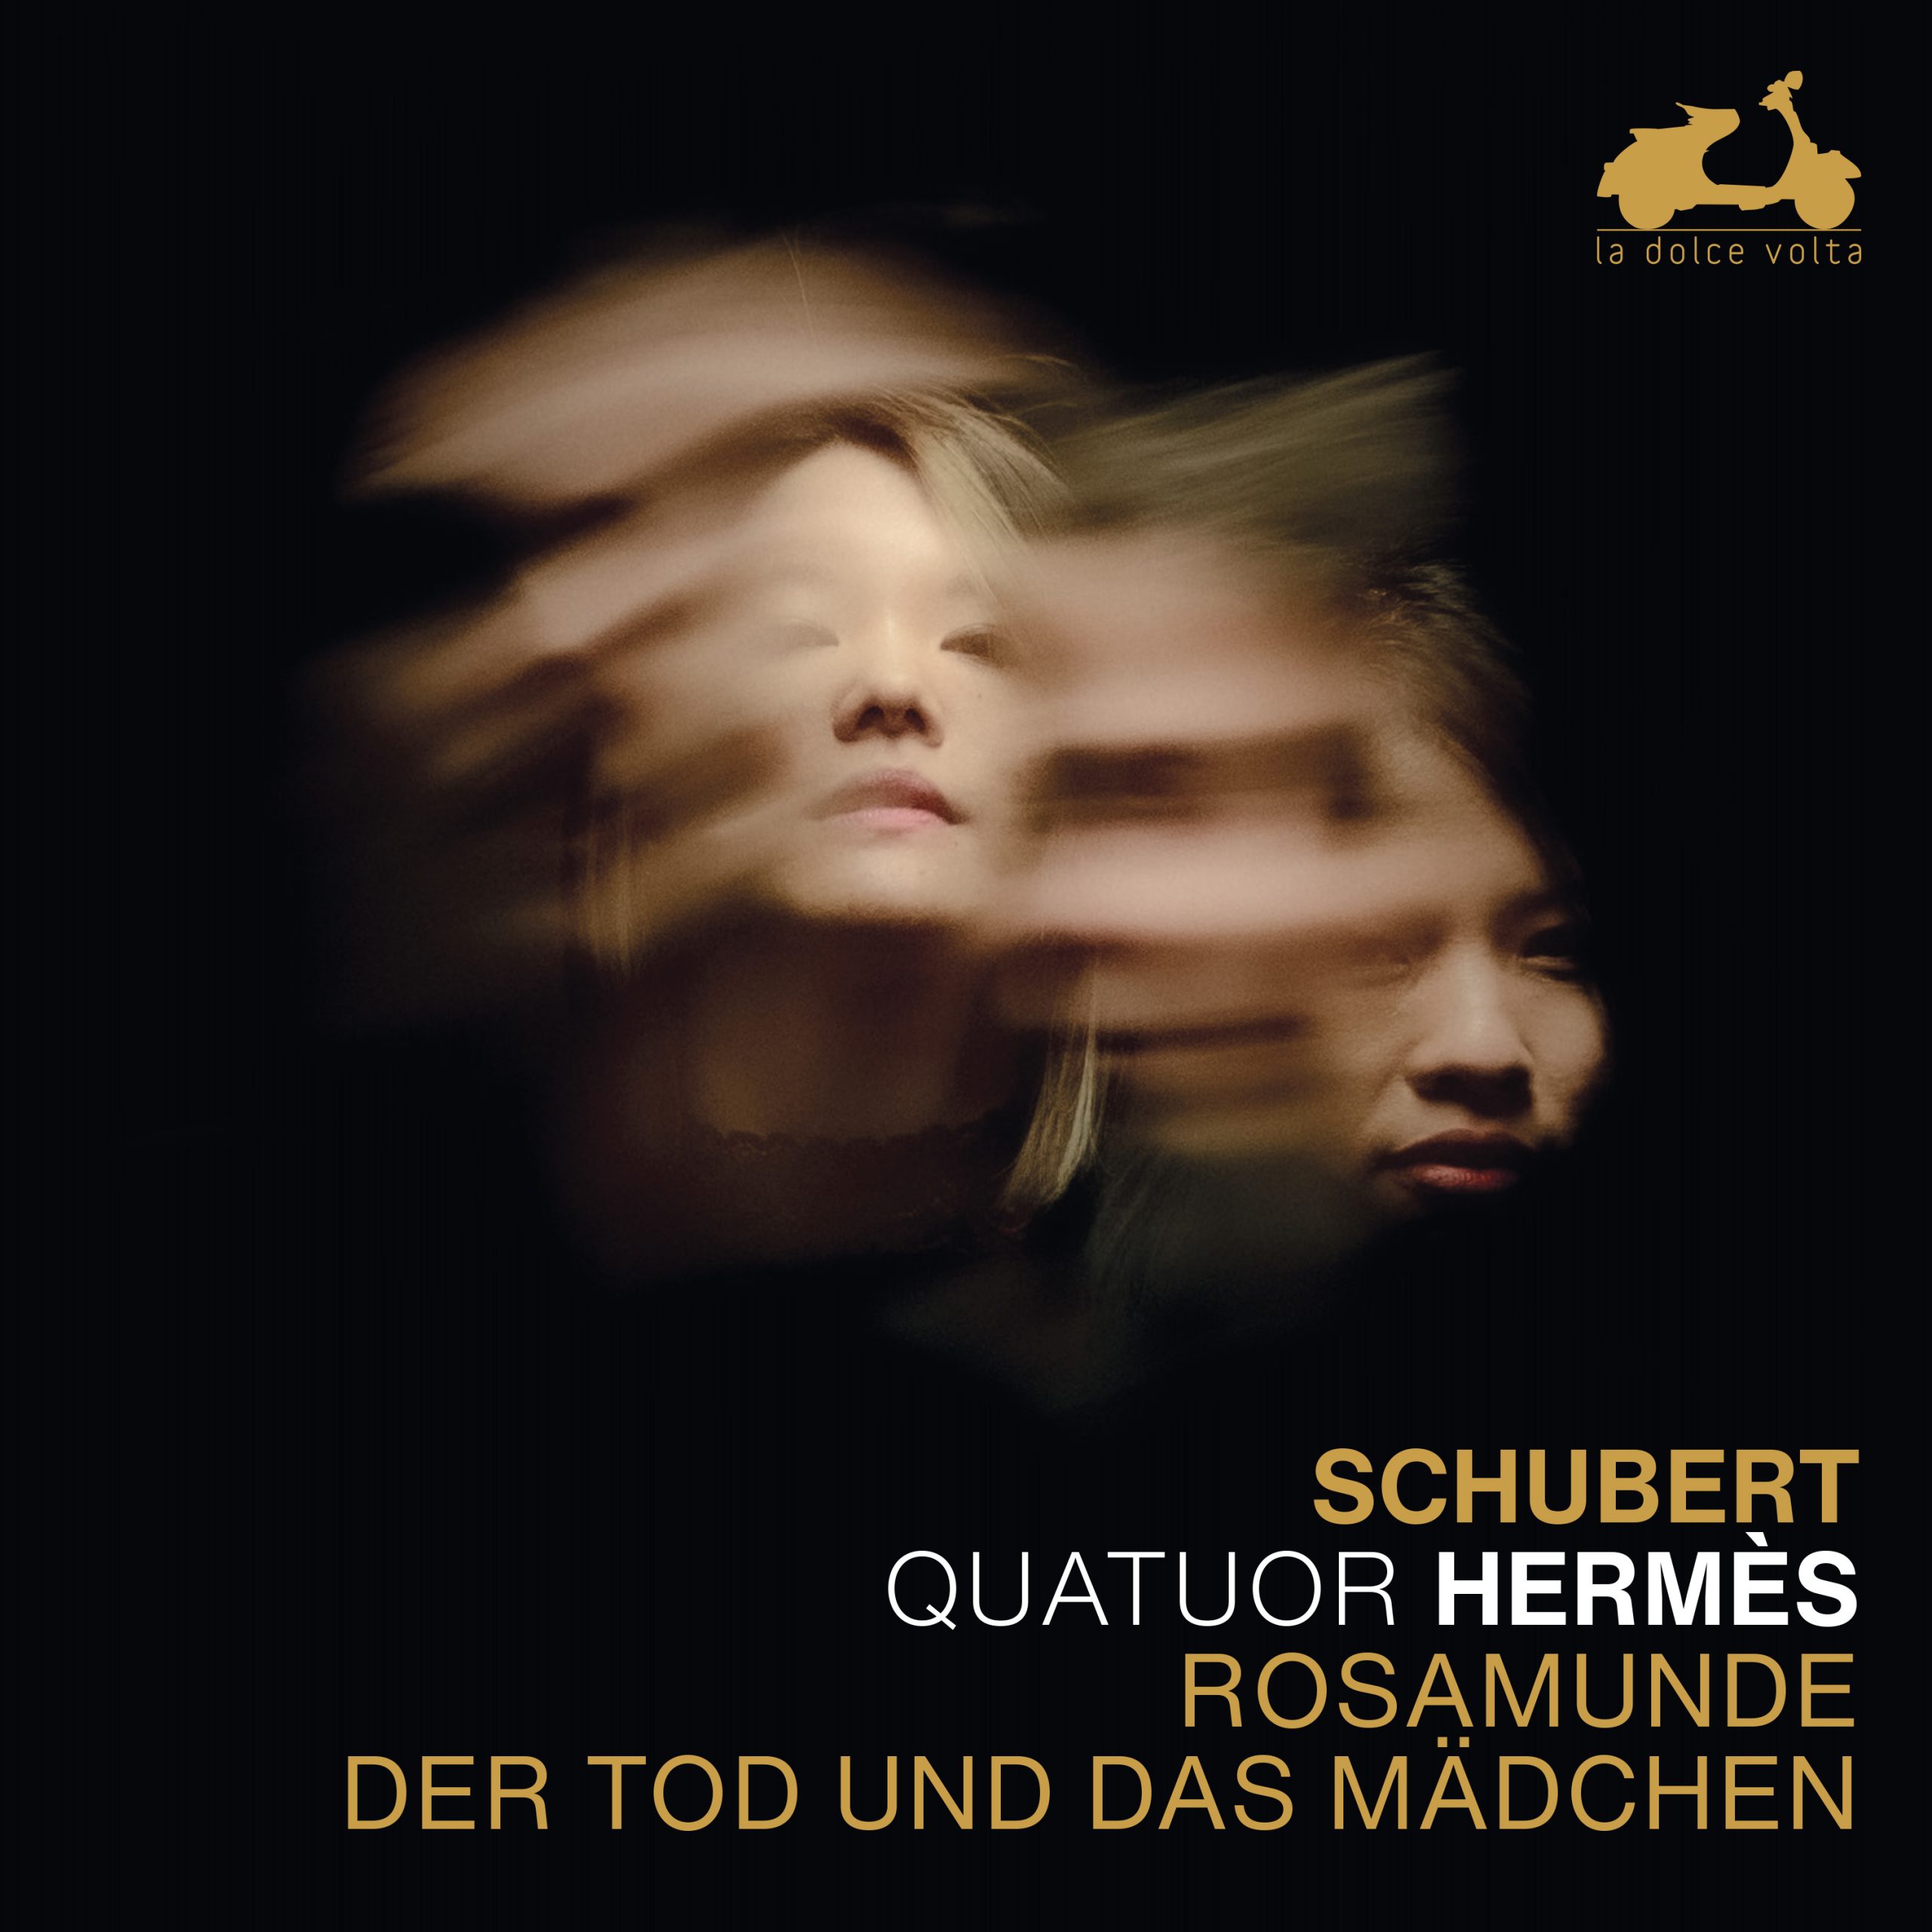 Quatuor Hermes - Schubert: Rosamunde & Der Tod und das Madchen (2021) [FLAC 24bit/96kHz]